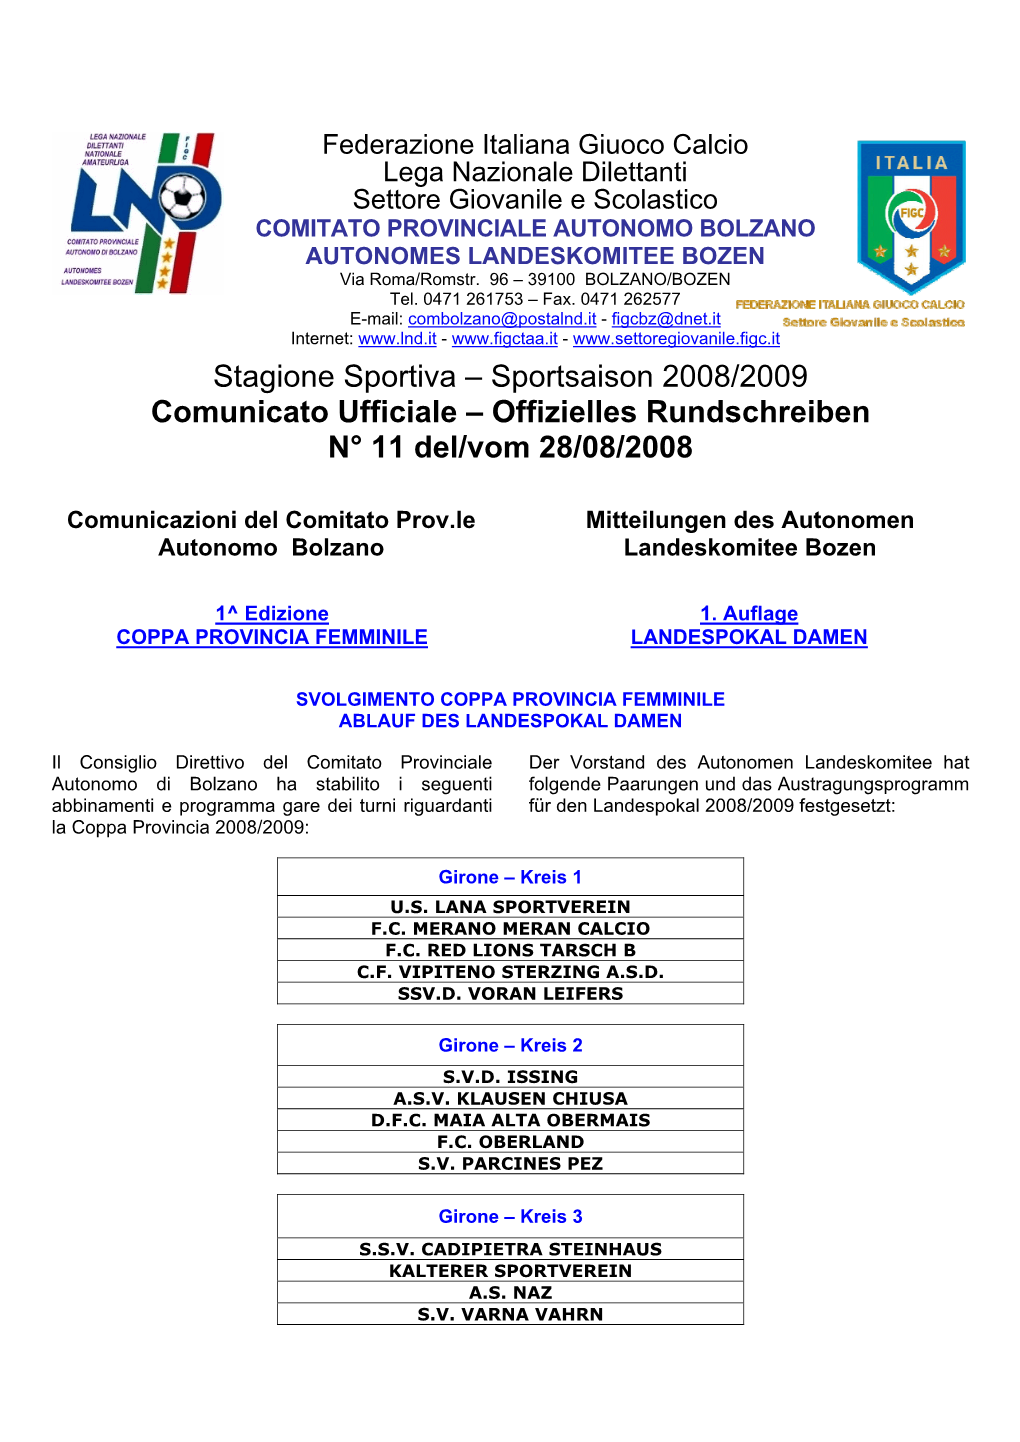 Stagione Sportiva – Sportsaison 2008/2009 Comunicato Ufficiale – Offizielles Rundschreiben N° 11 Del/Vom 28/08/2008